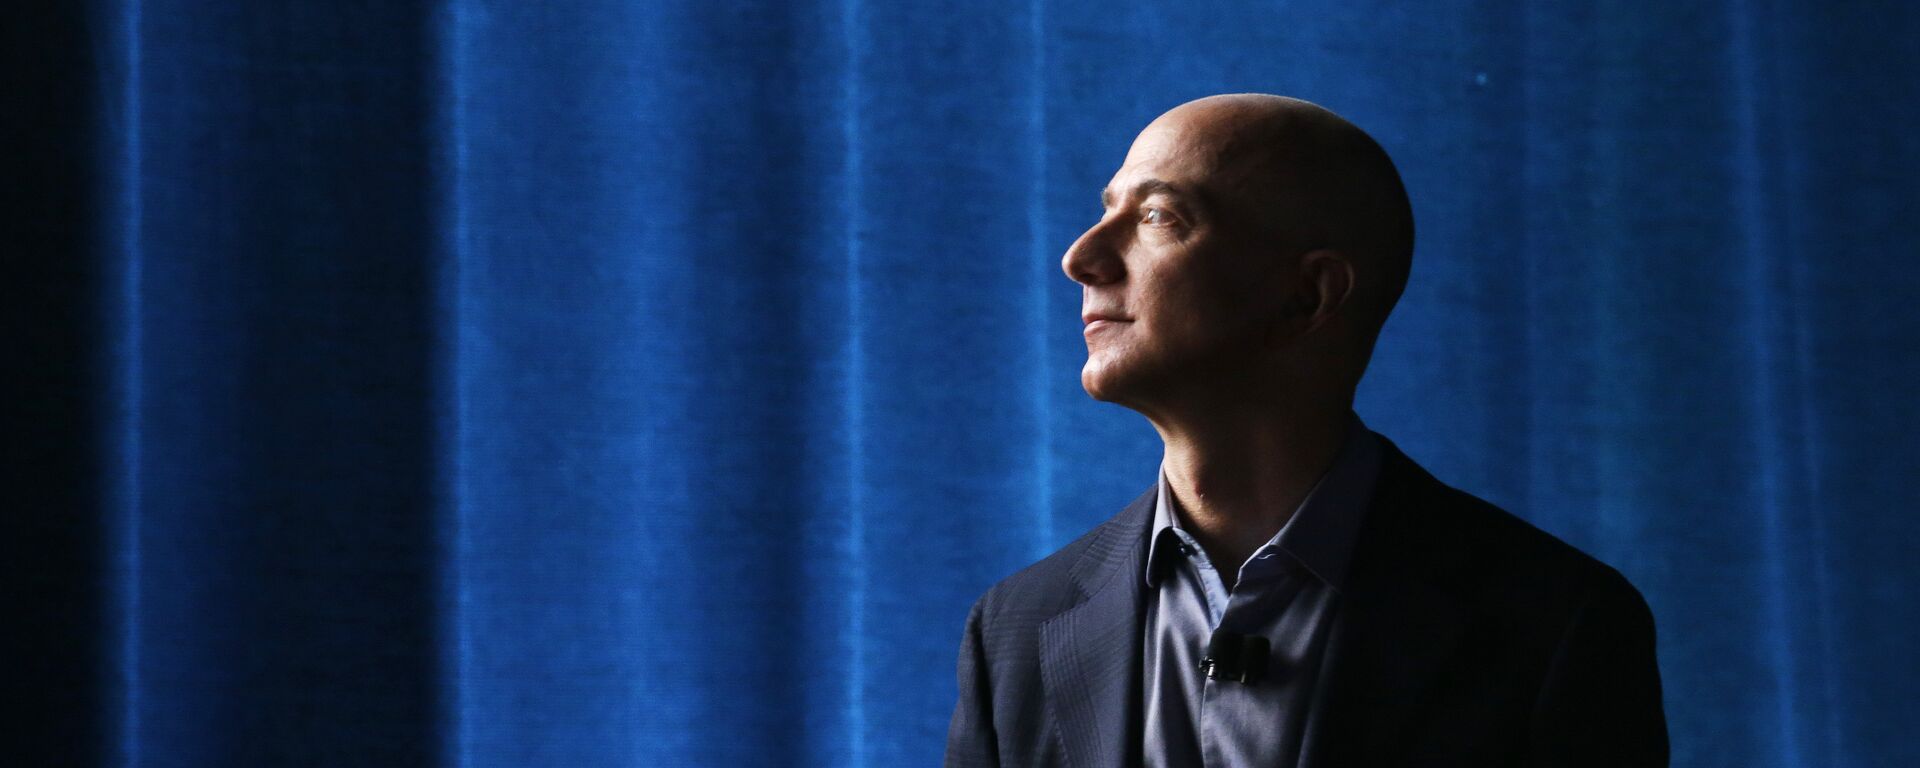 Jeff Bezos, propietario de Amazon  - Sputnik Mundo, 1920, 02.02.2021